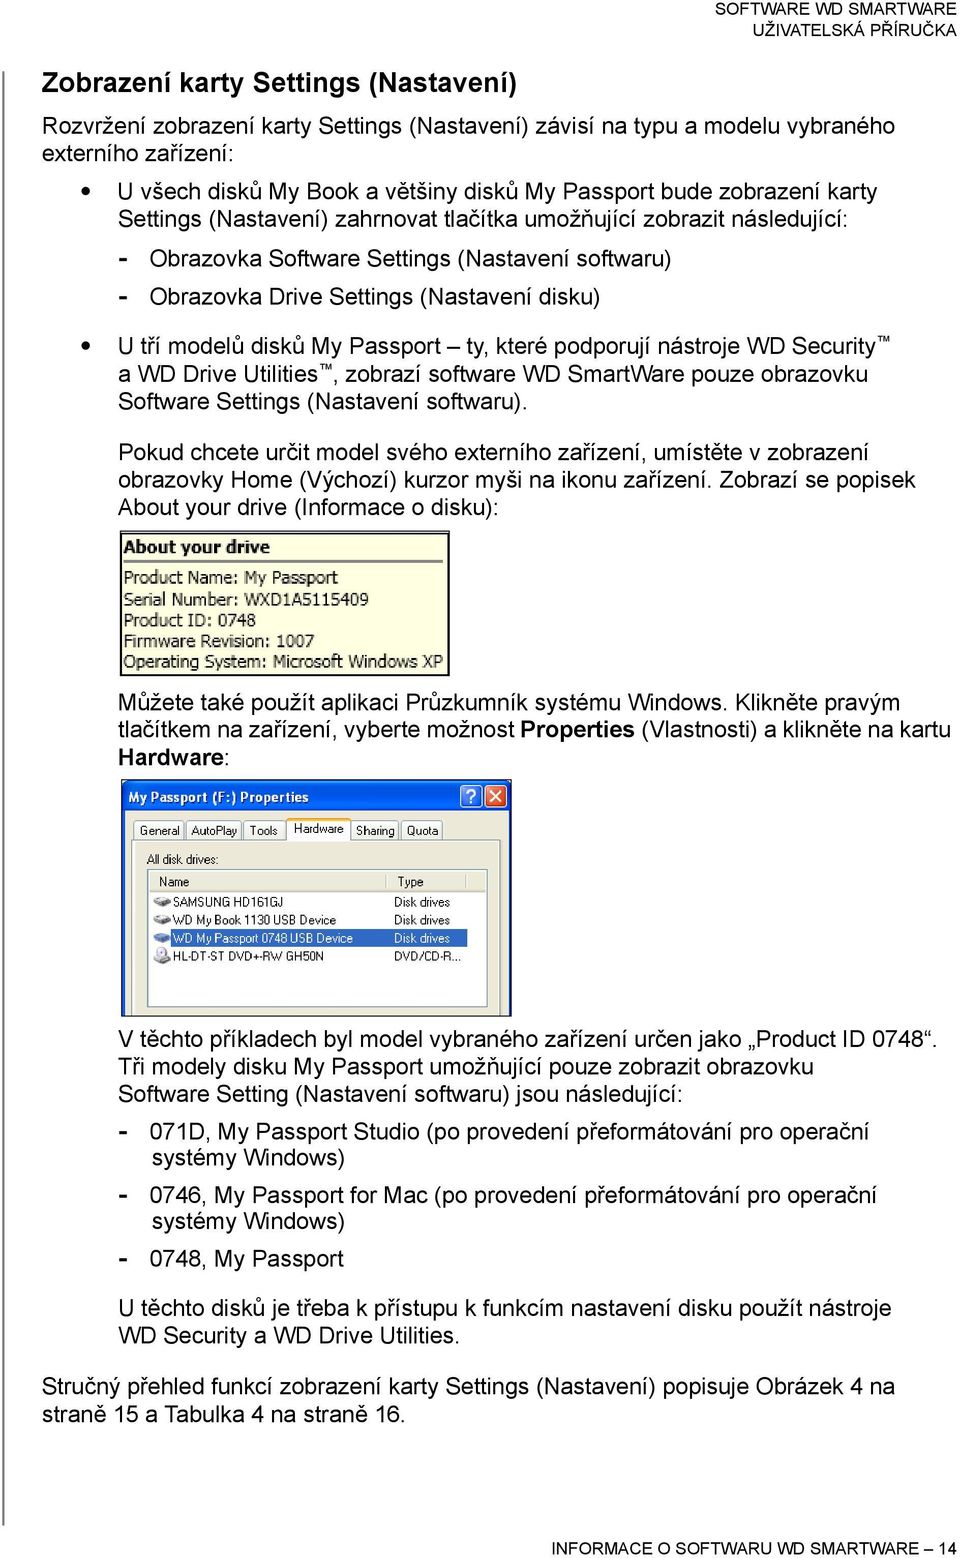 disků My Passport ty, které podporují nástroje WD Security a WD Drive Utilities, zobrazí software WD SmartWare pouze obrazovku Software Settings (Nastavení softwaru).